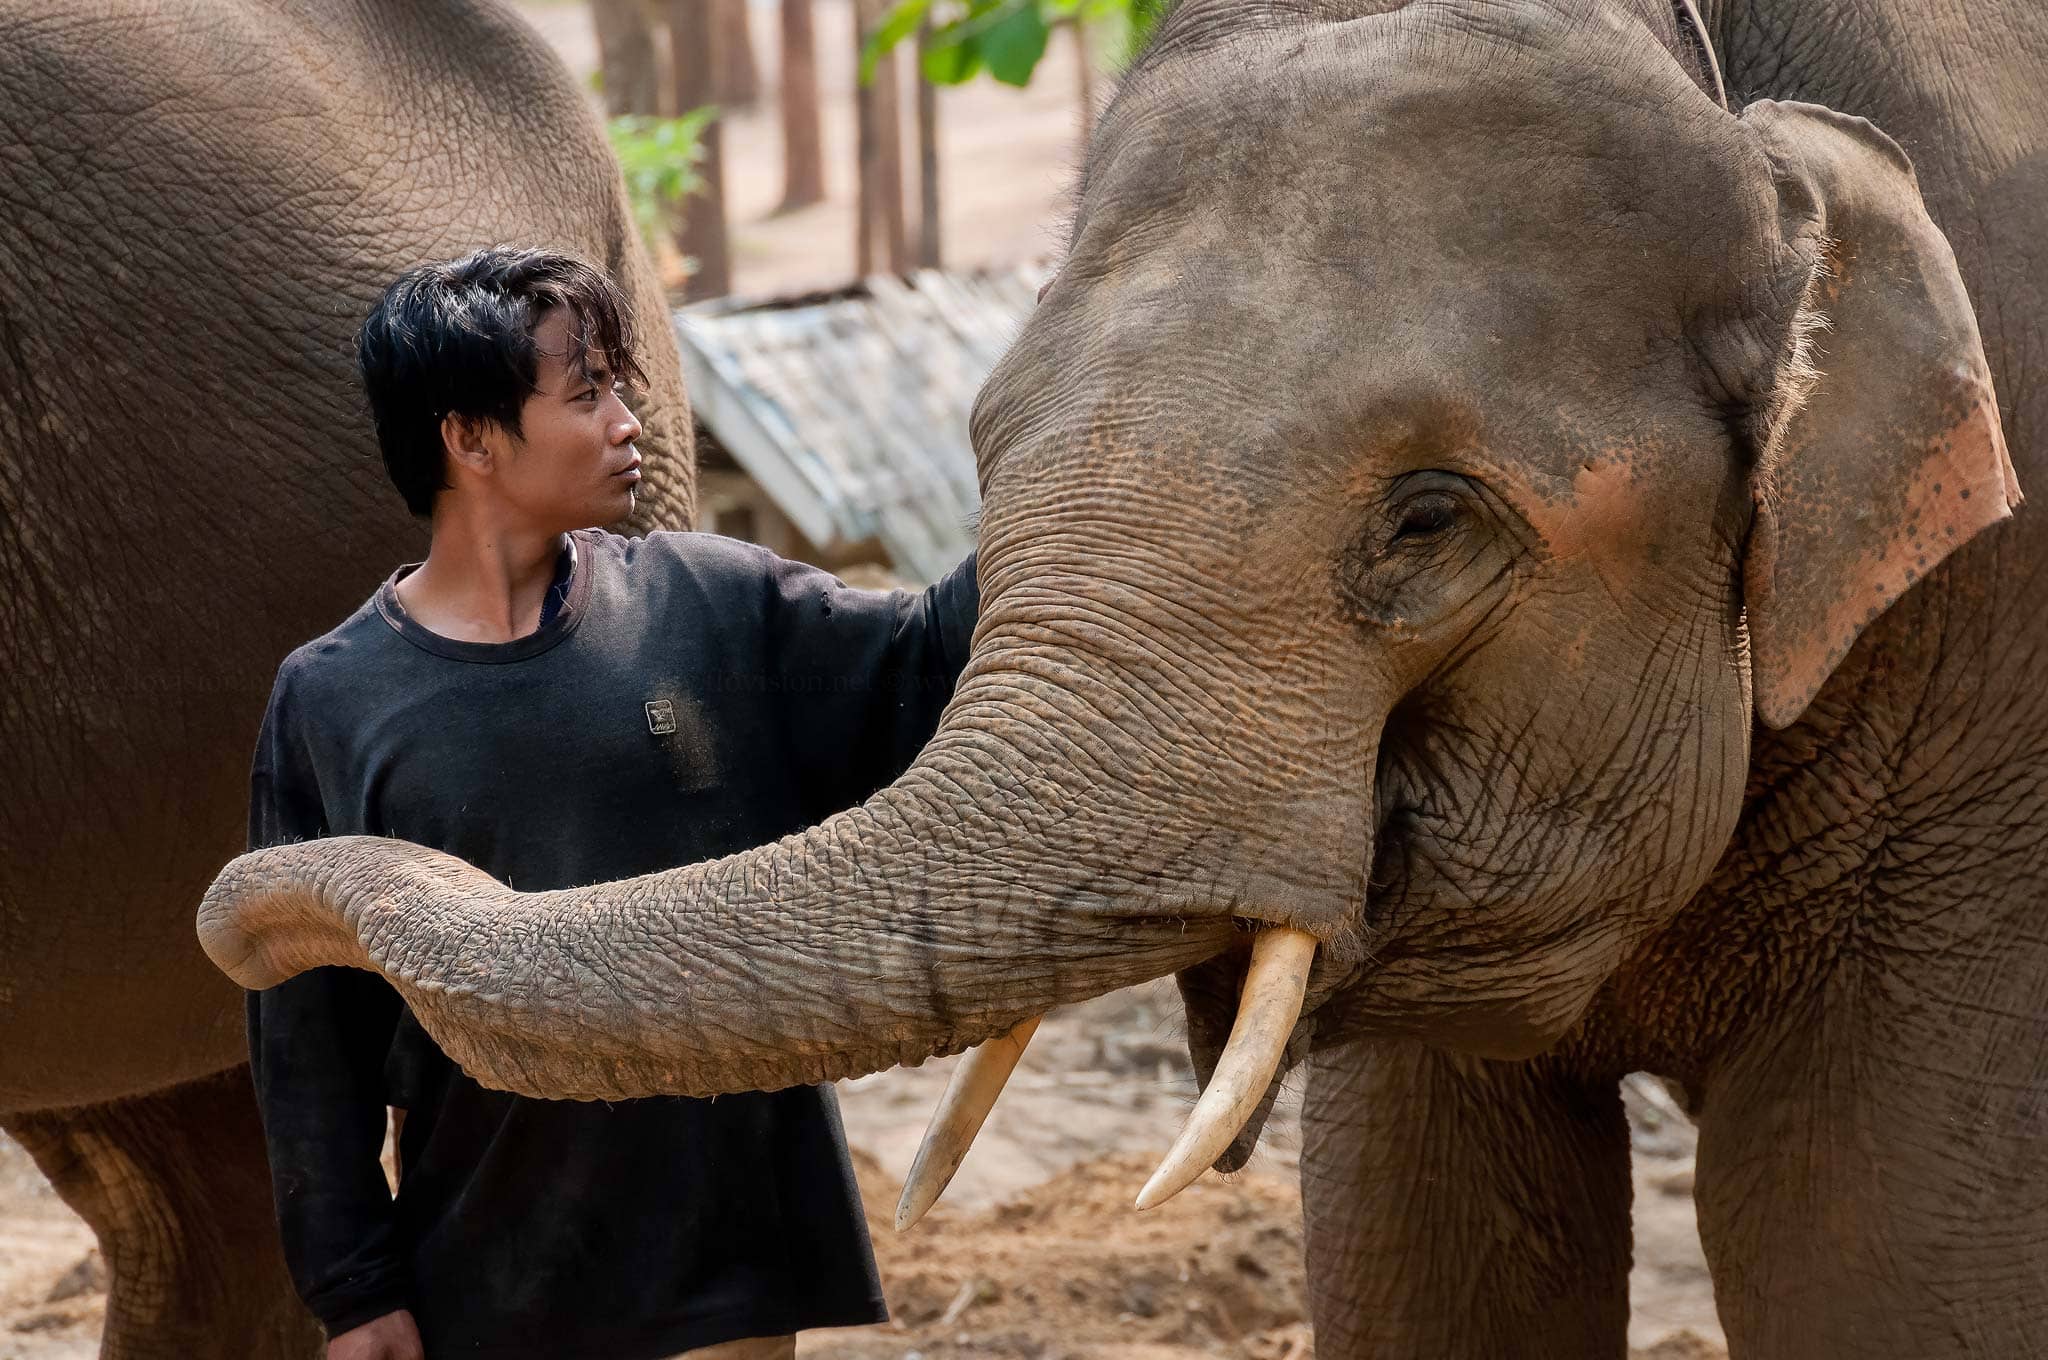 Elephant sanctuary in Laos